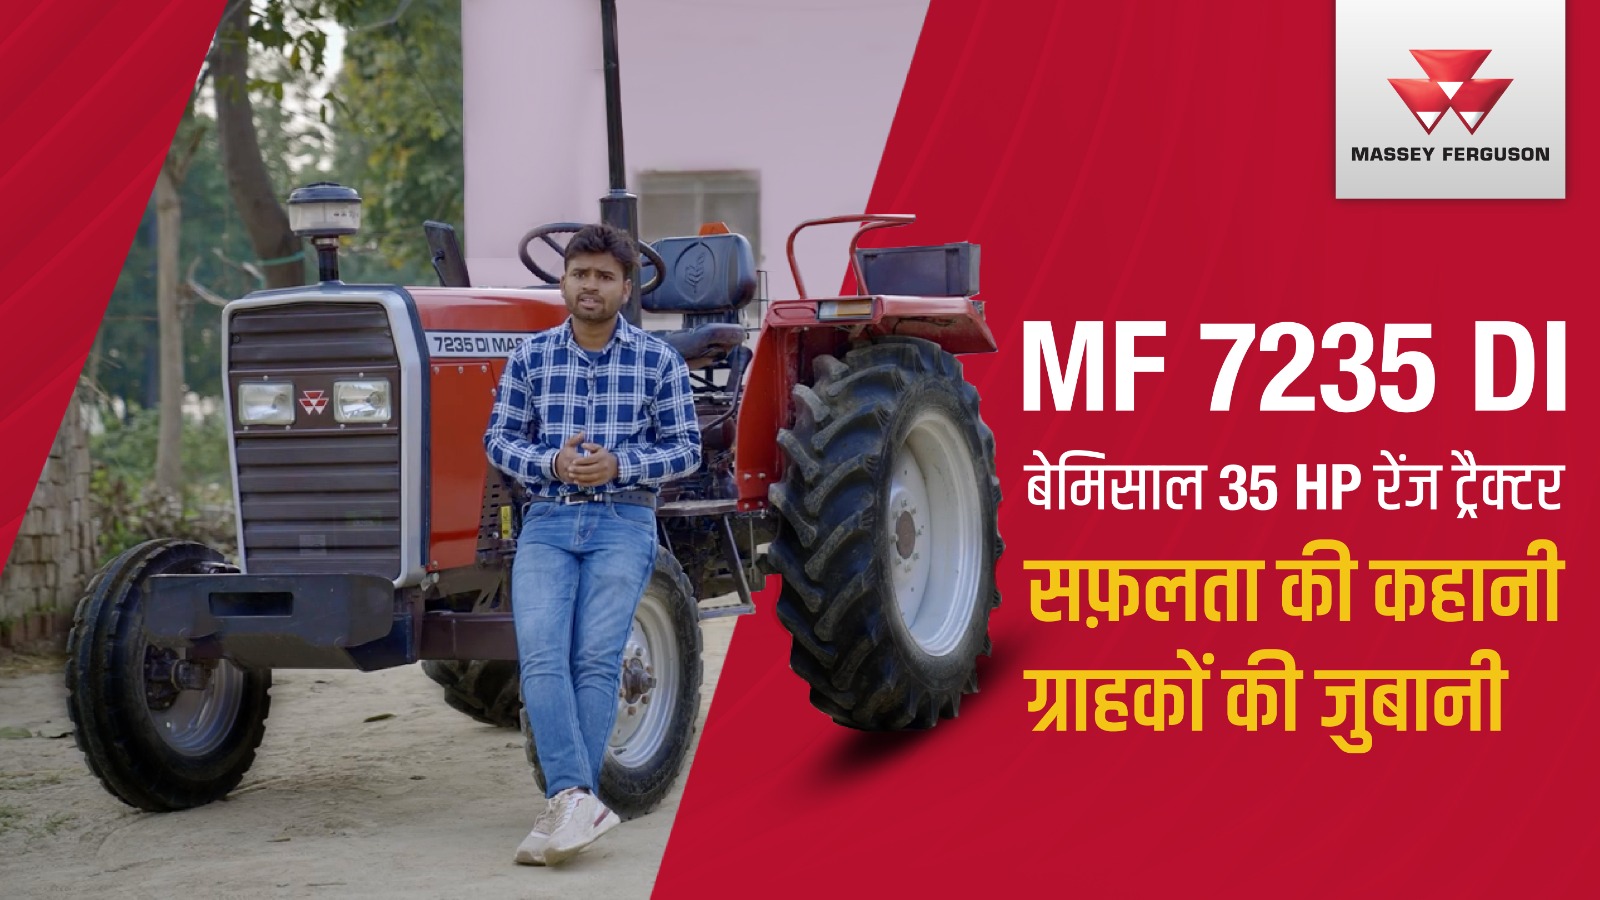 Massey Ferguson 7235 से बदला किसानों और ग्रामीण उद्यमियों का जीवन | दमदार 35 hp रेंज ट्रैक्टर